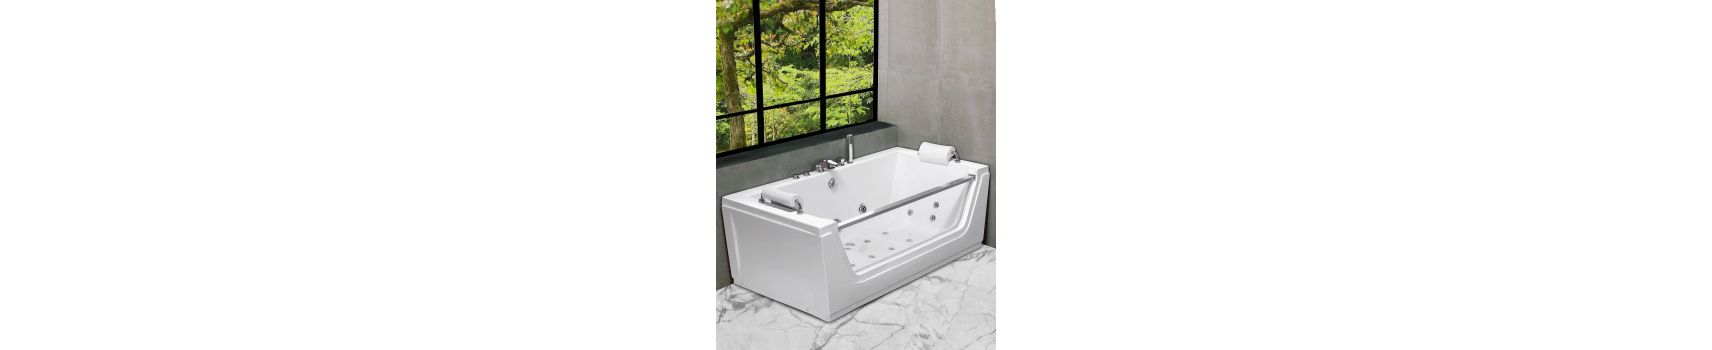 Vasche per il bagno freestanding e idromassaggio | Boleco